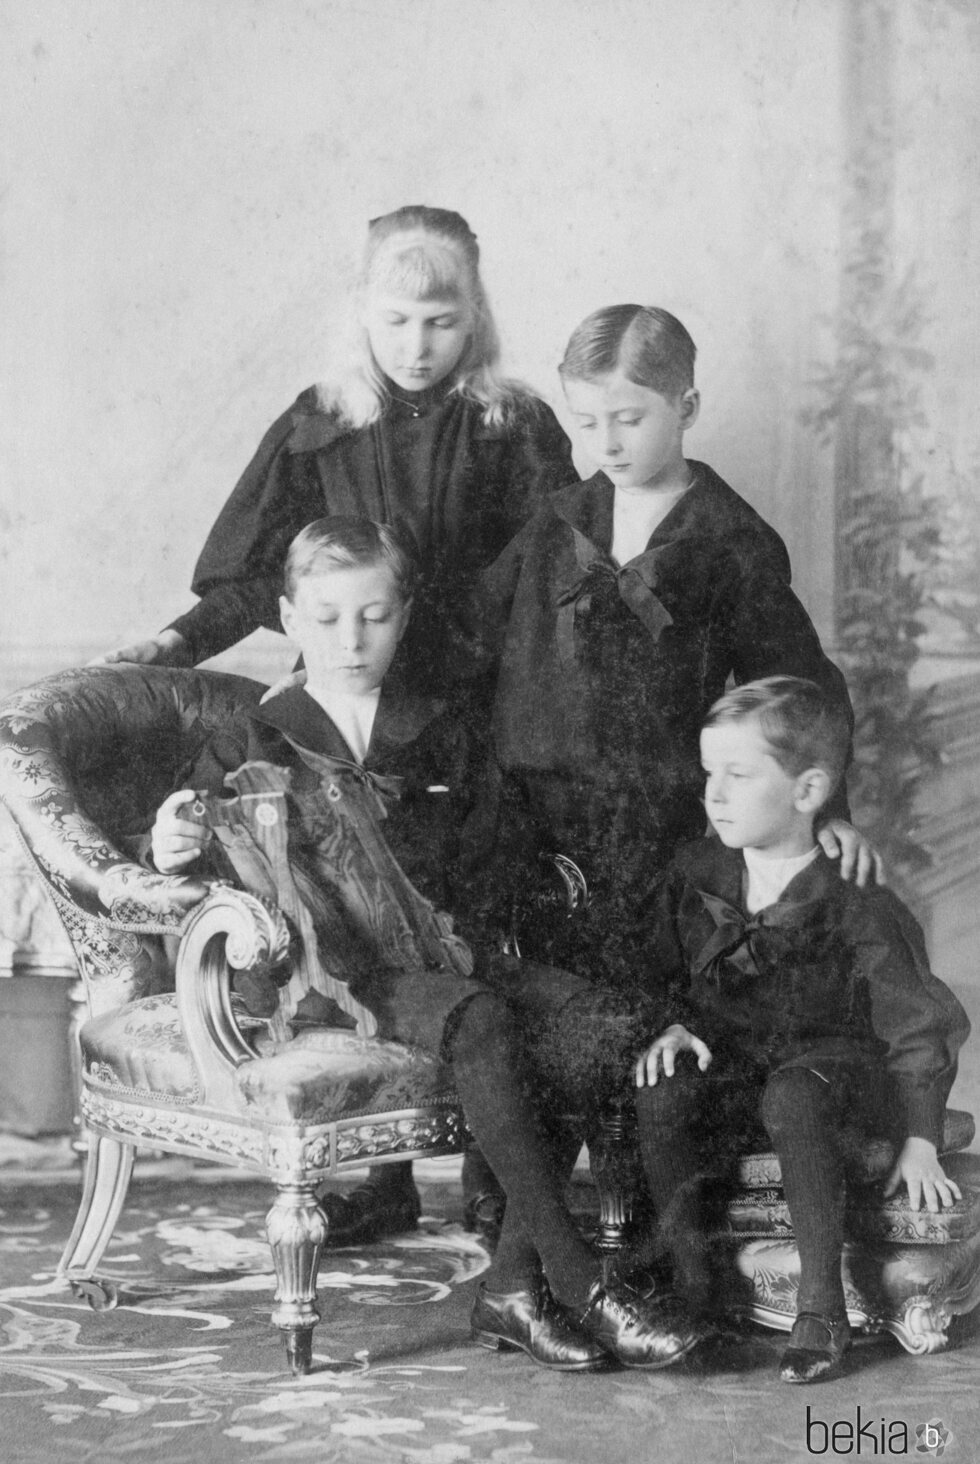 La Reina Victoria Eugenia con sus hermanos cuando eran pequeños